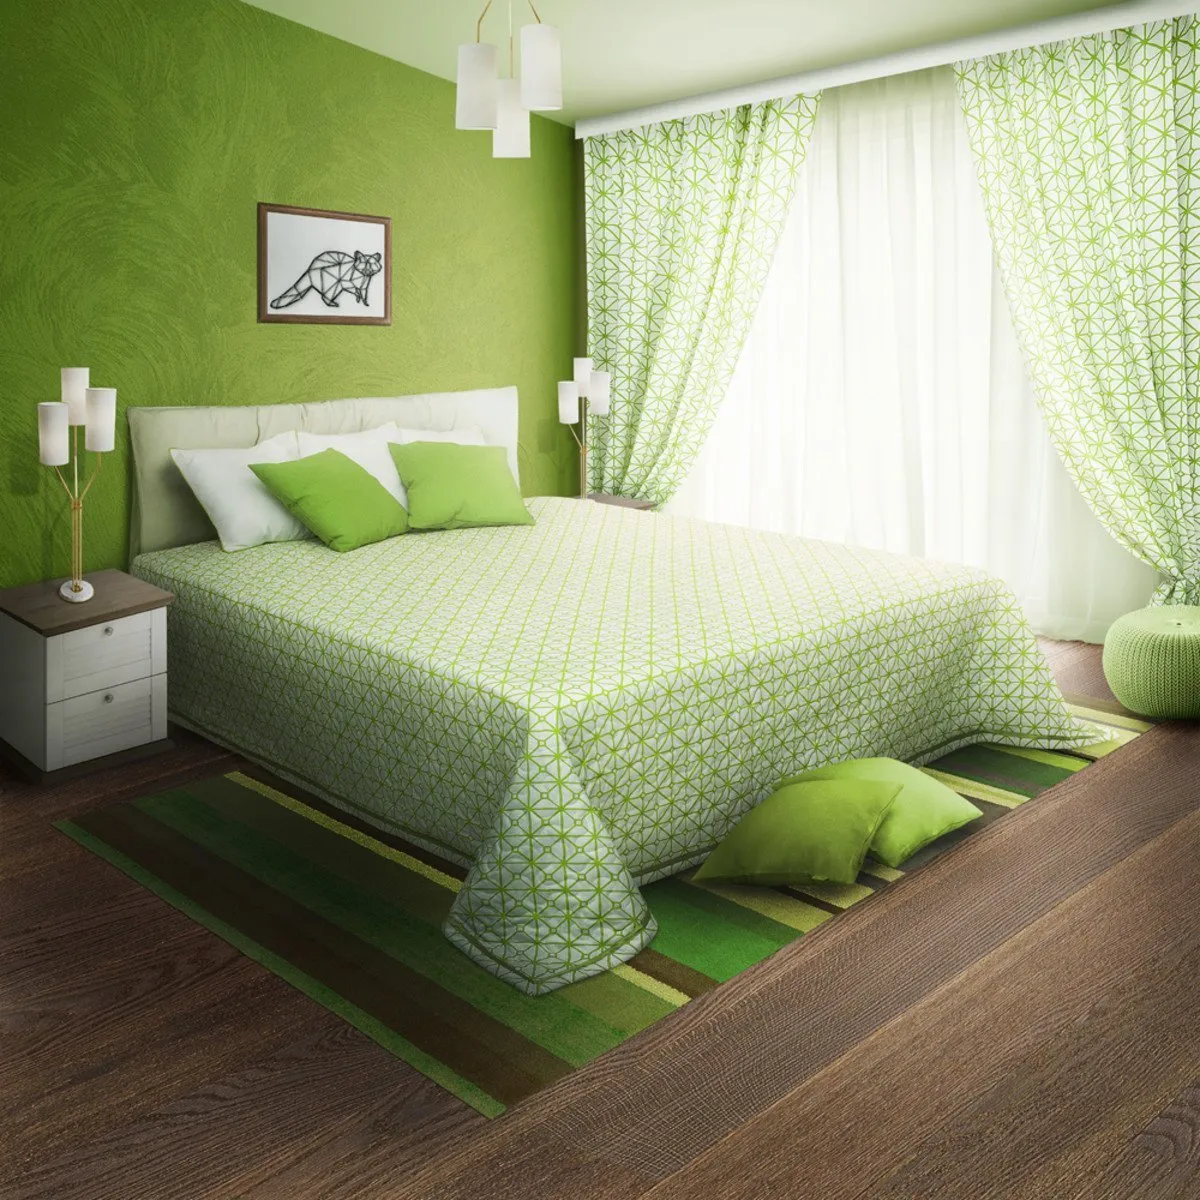 Спальня в зеленом цвете